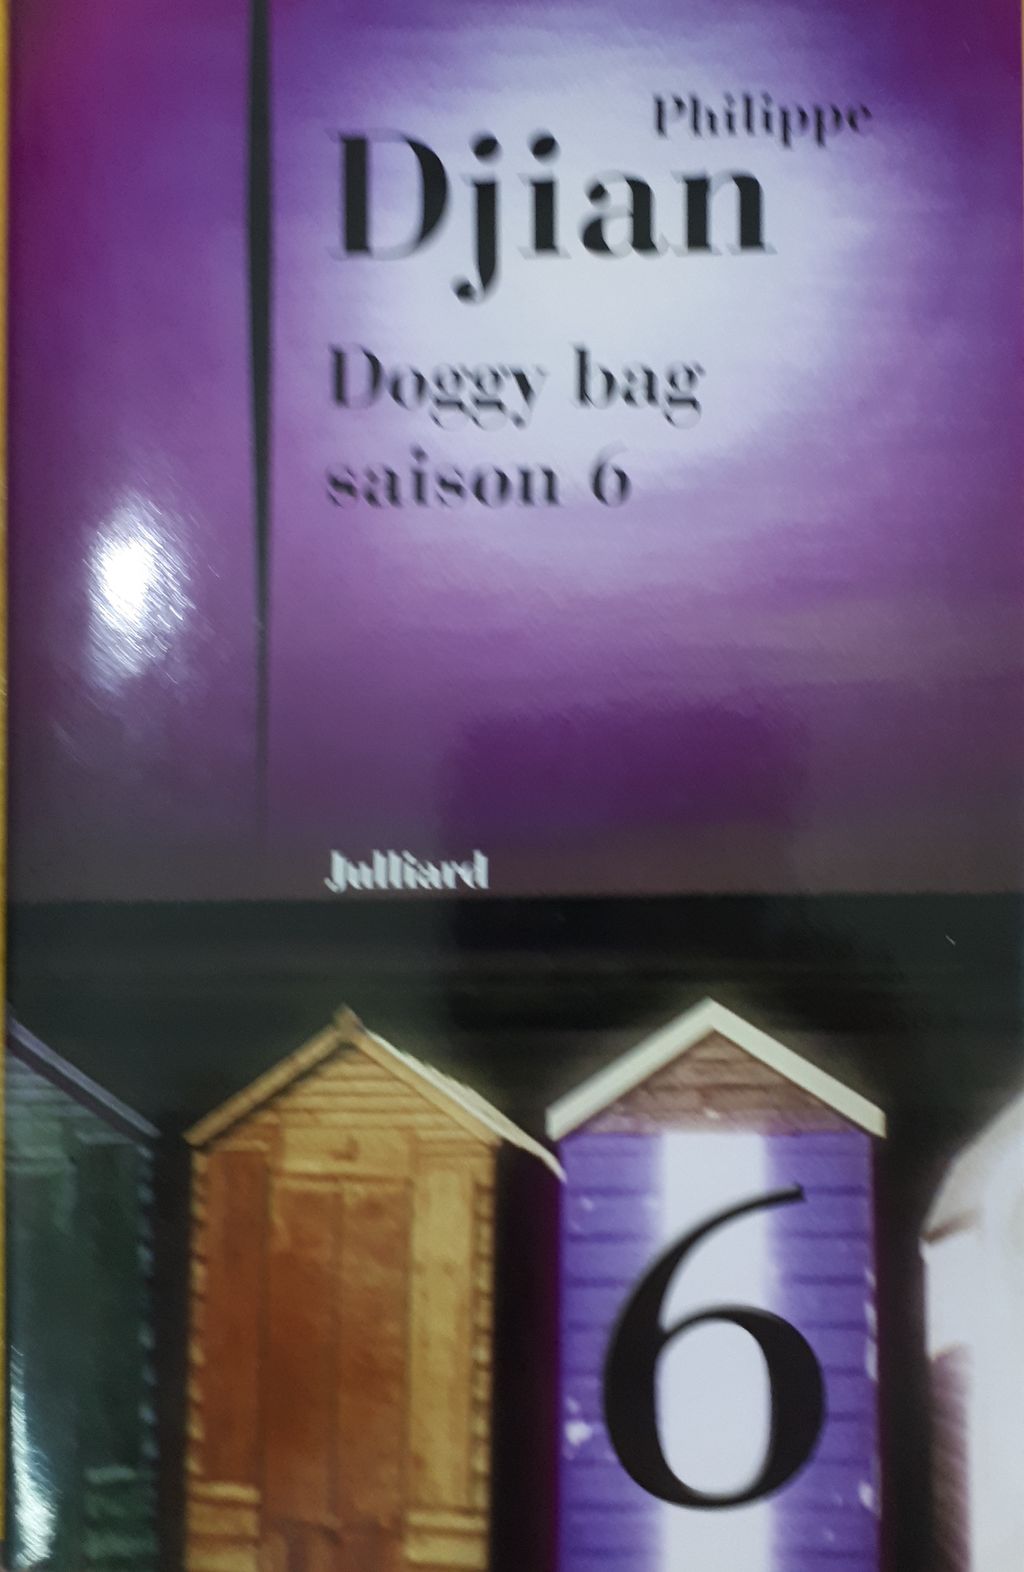 doggy bag saison 6.jpg